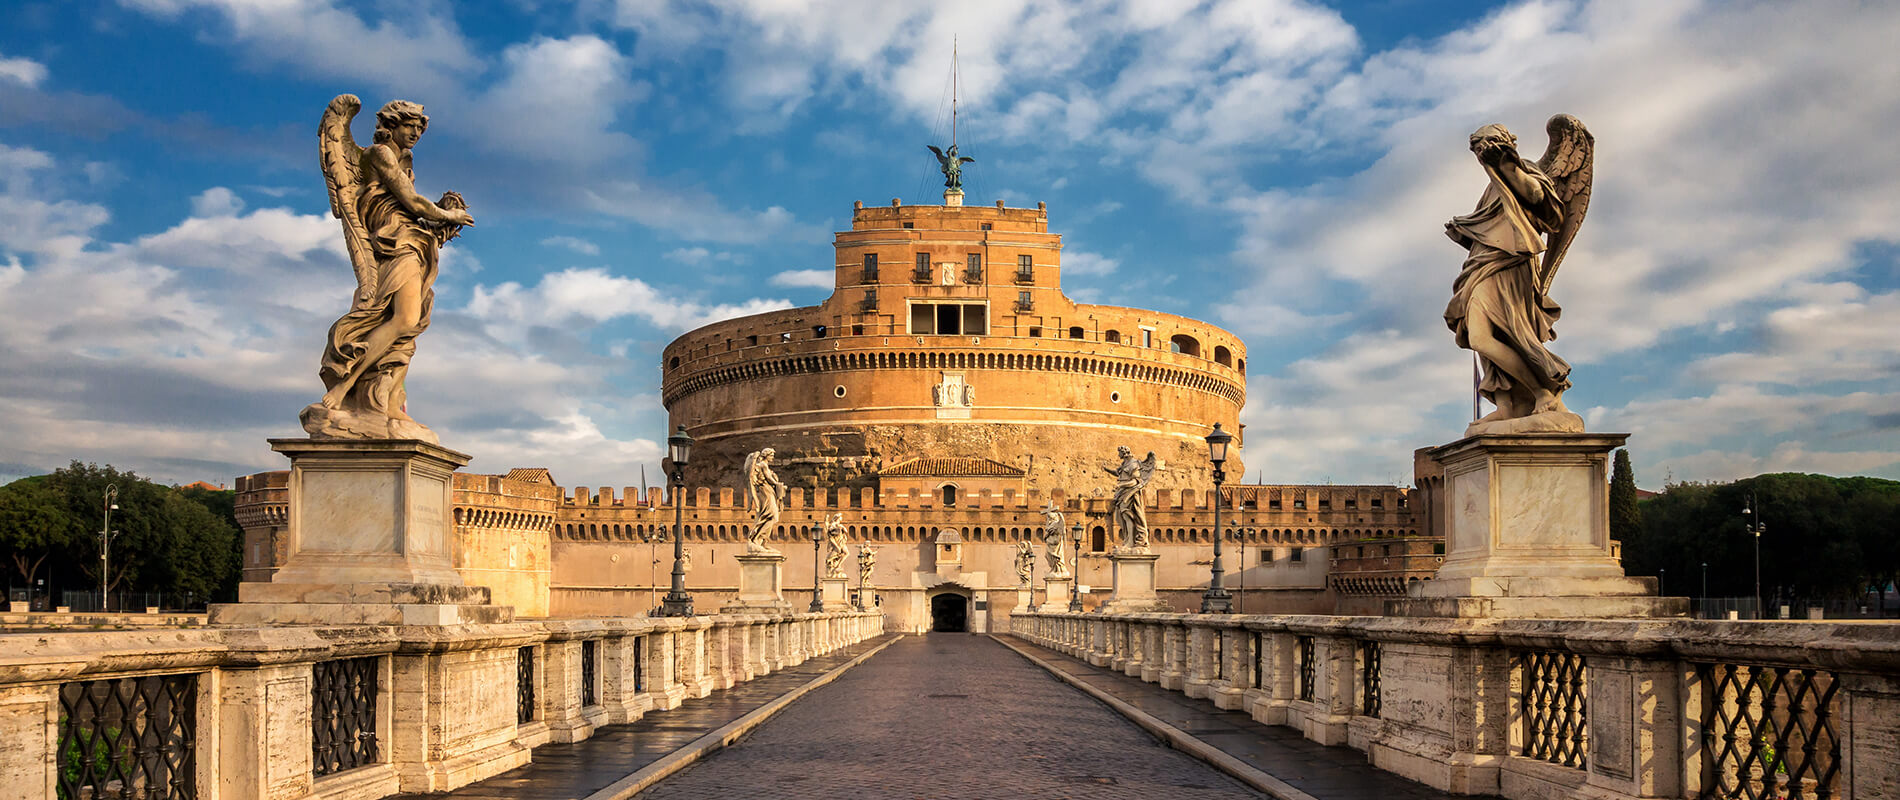 Castel Sant'Angelo, la maestosa fortezza della Città Eterna